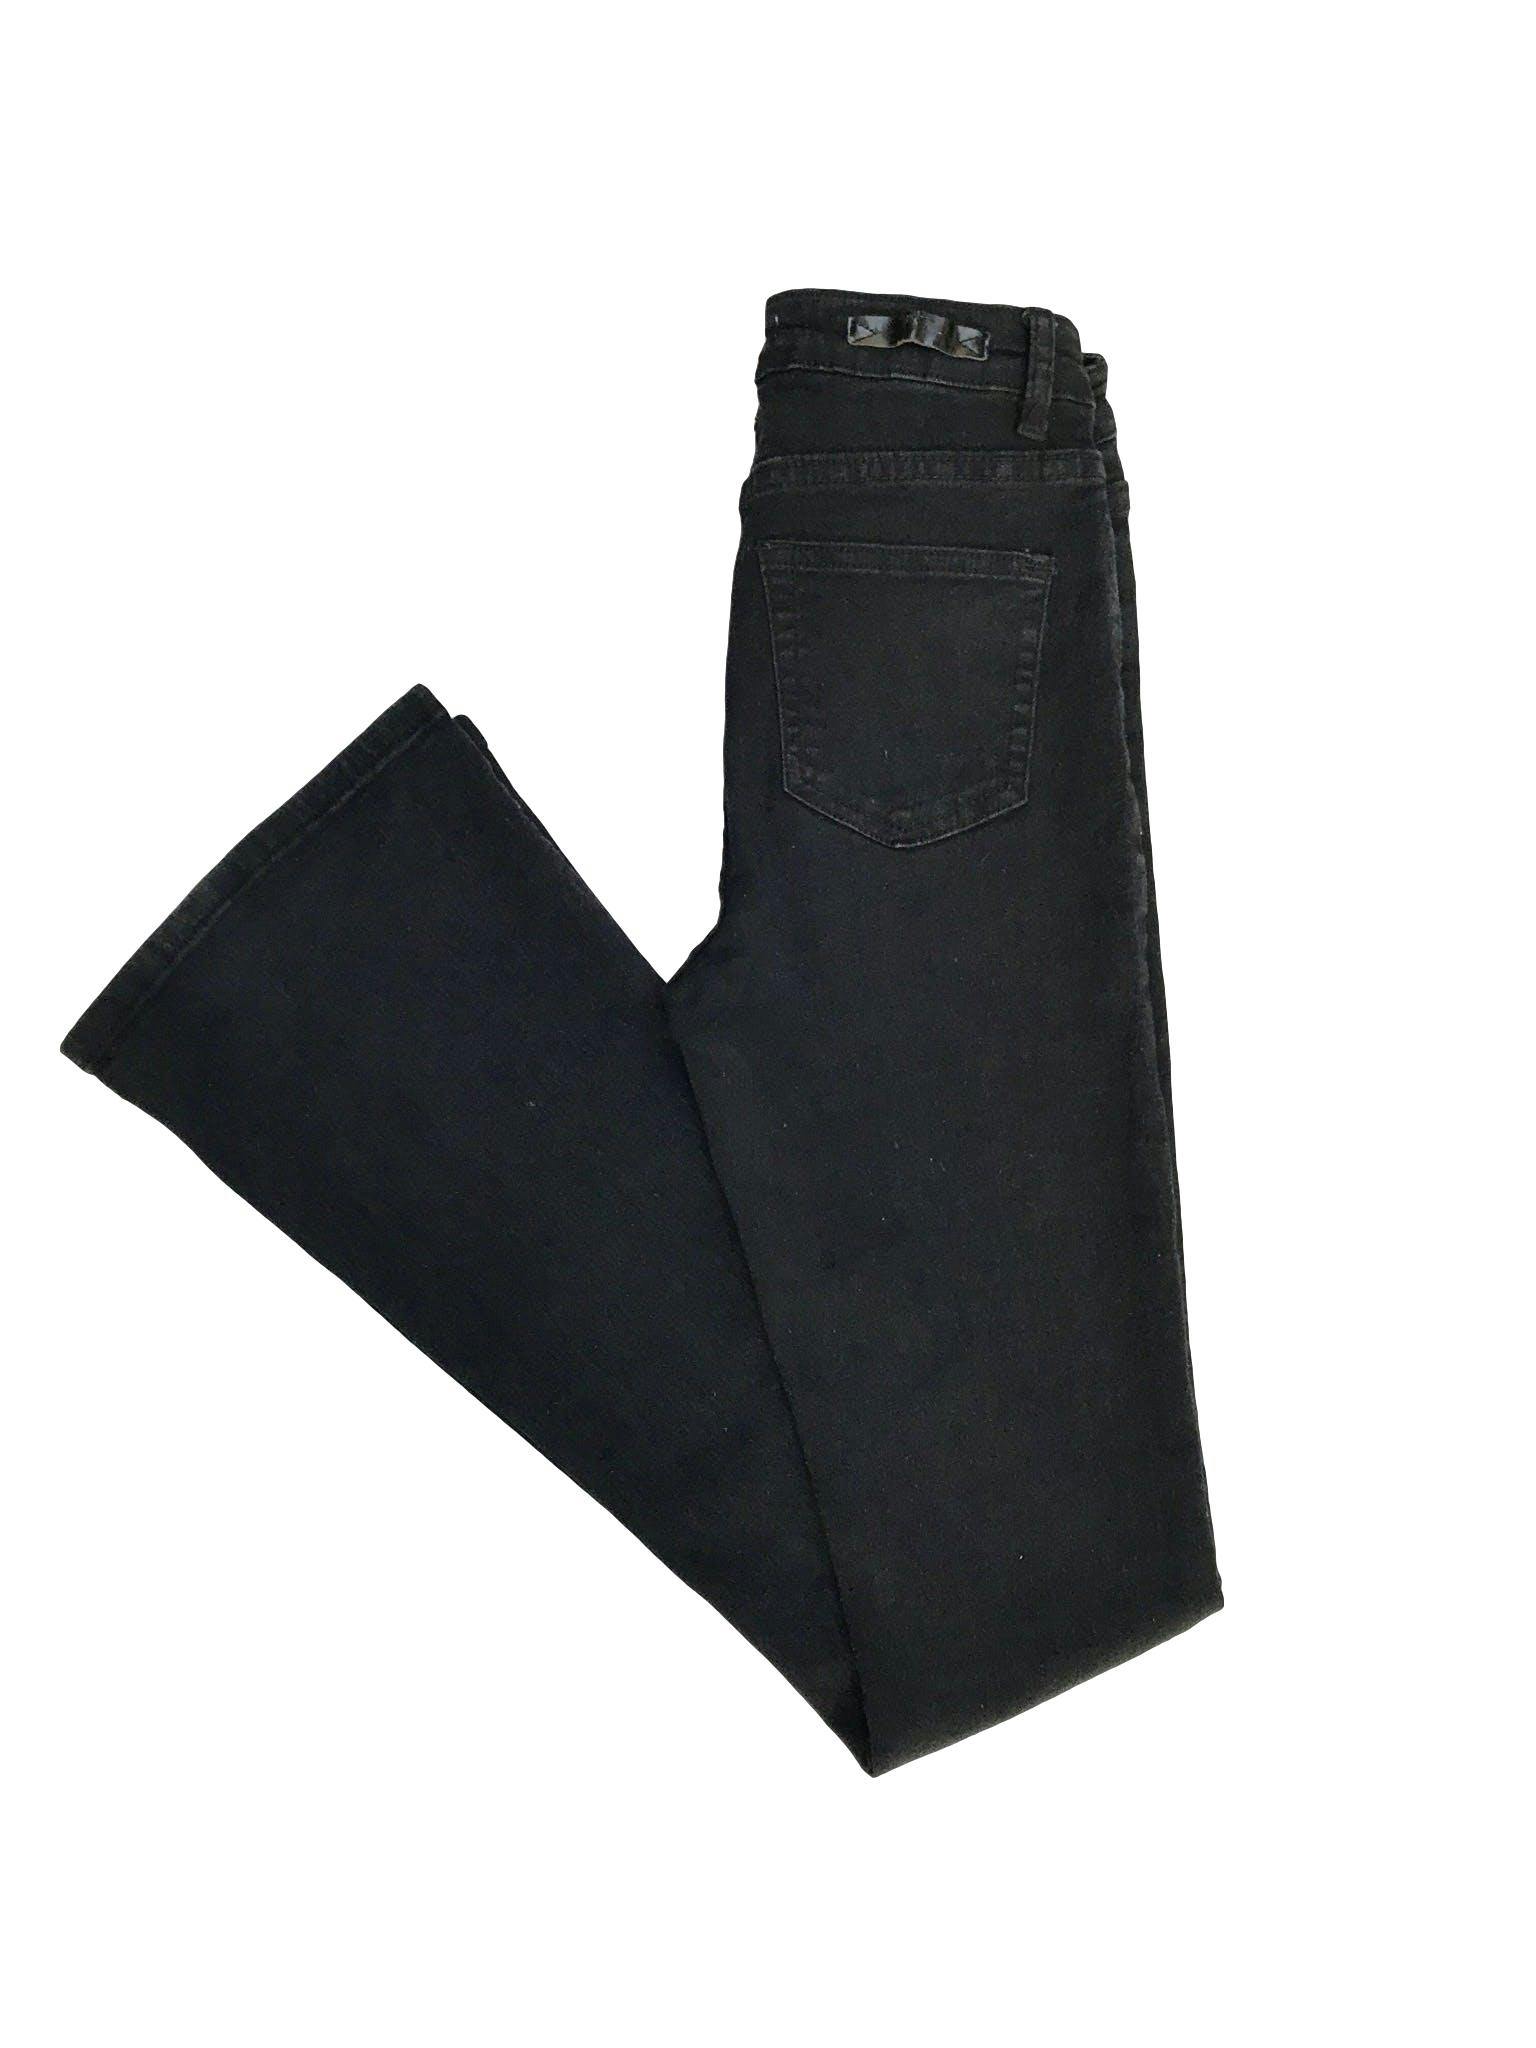 Pantalón index a la cintura, de denim negro stretch 75% algodón, 5 bolsillos, pegado con basta campana